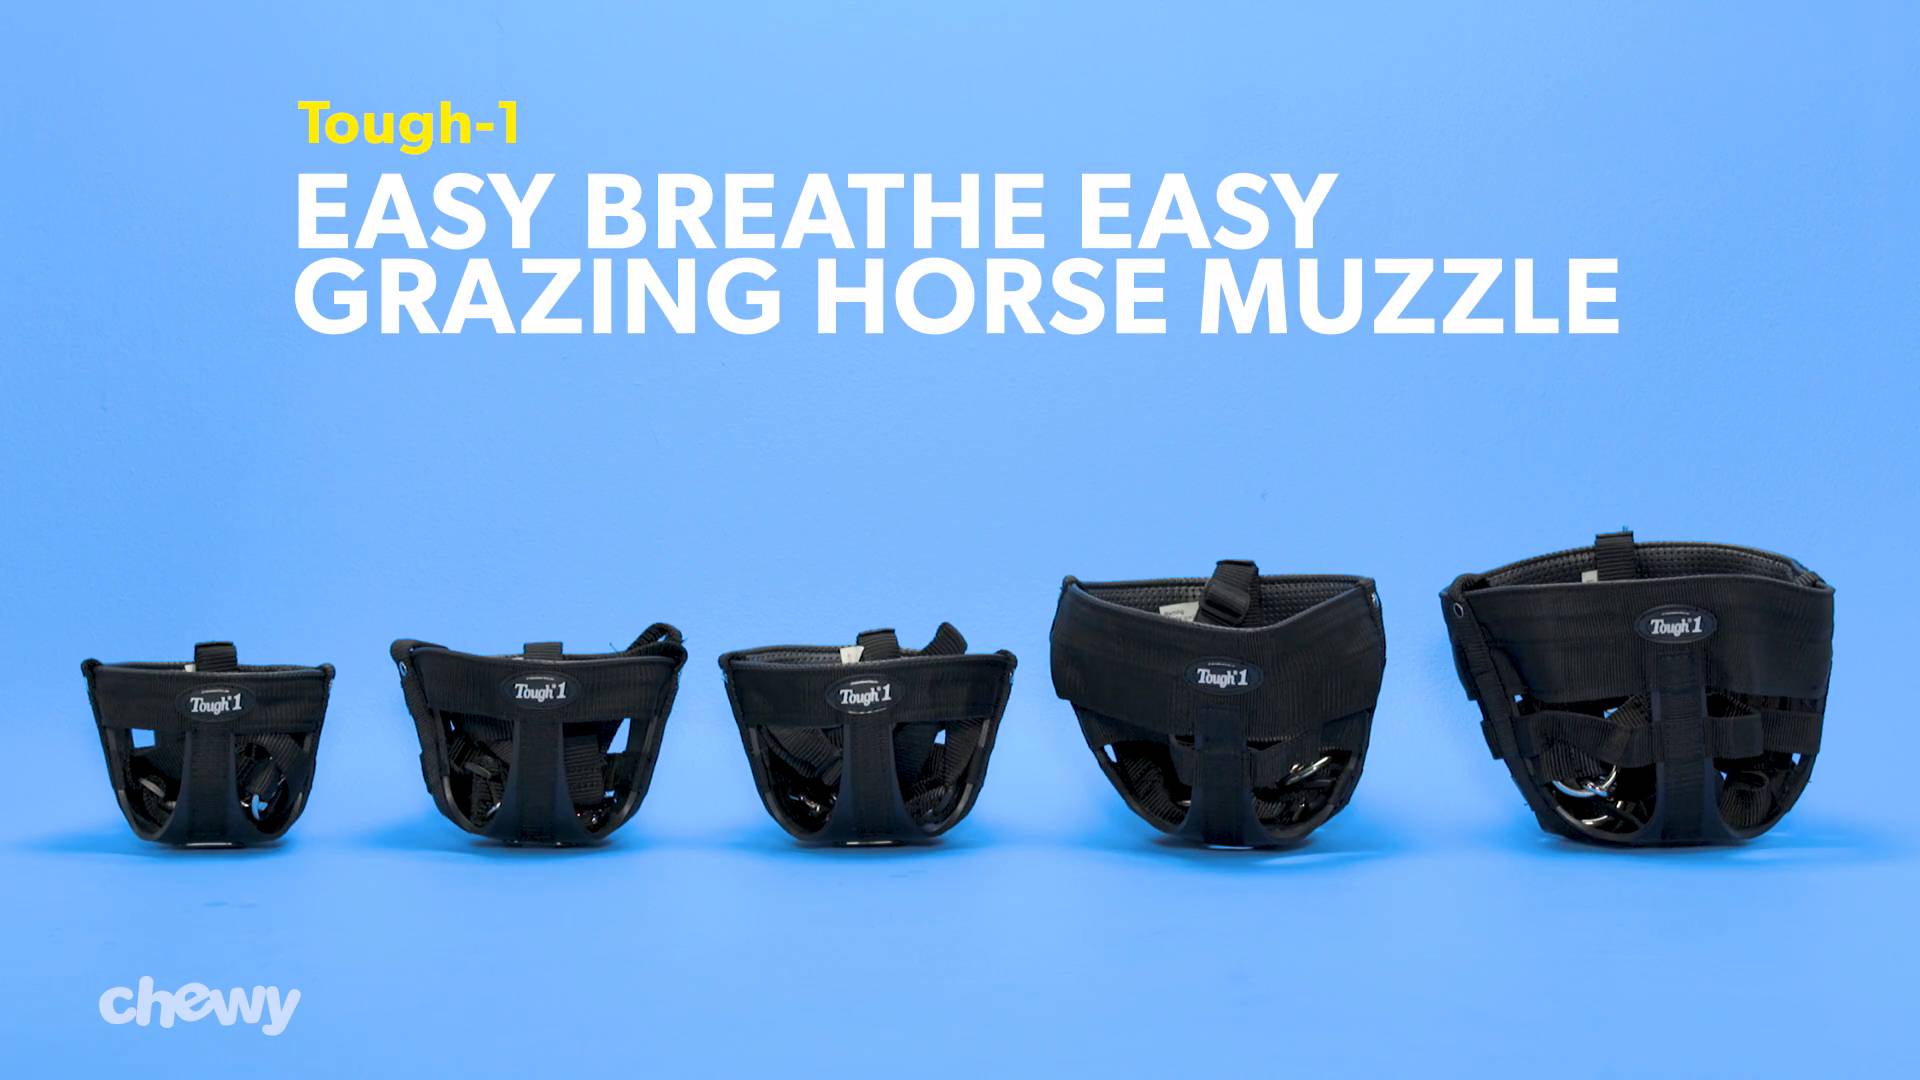 Tough1 Easy Breathe Grazing Muzzle Attach 